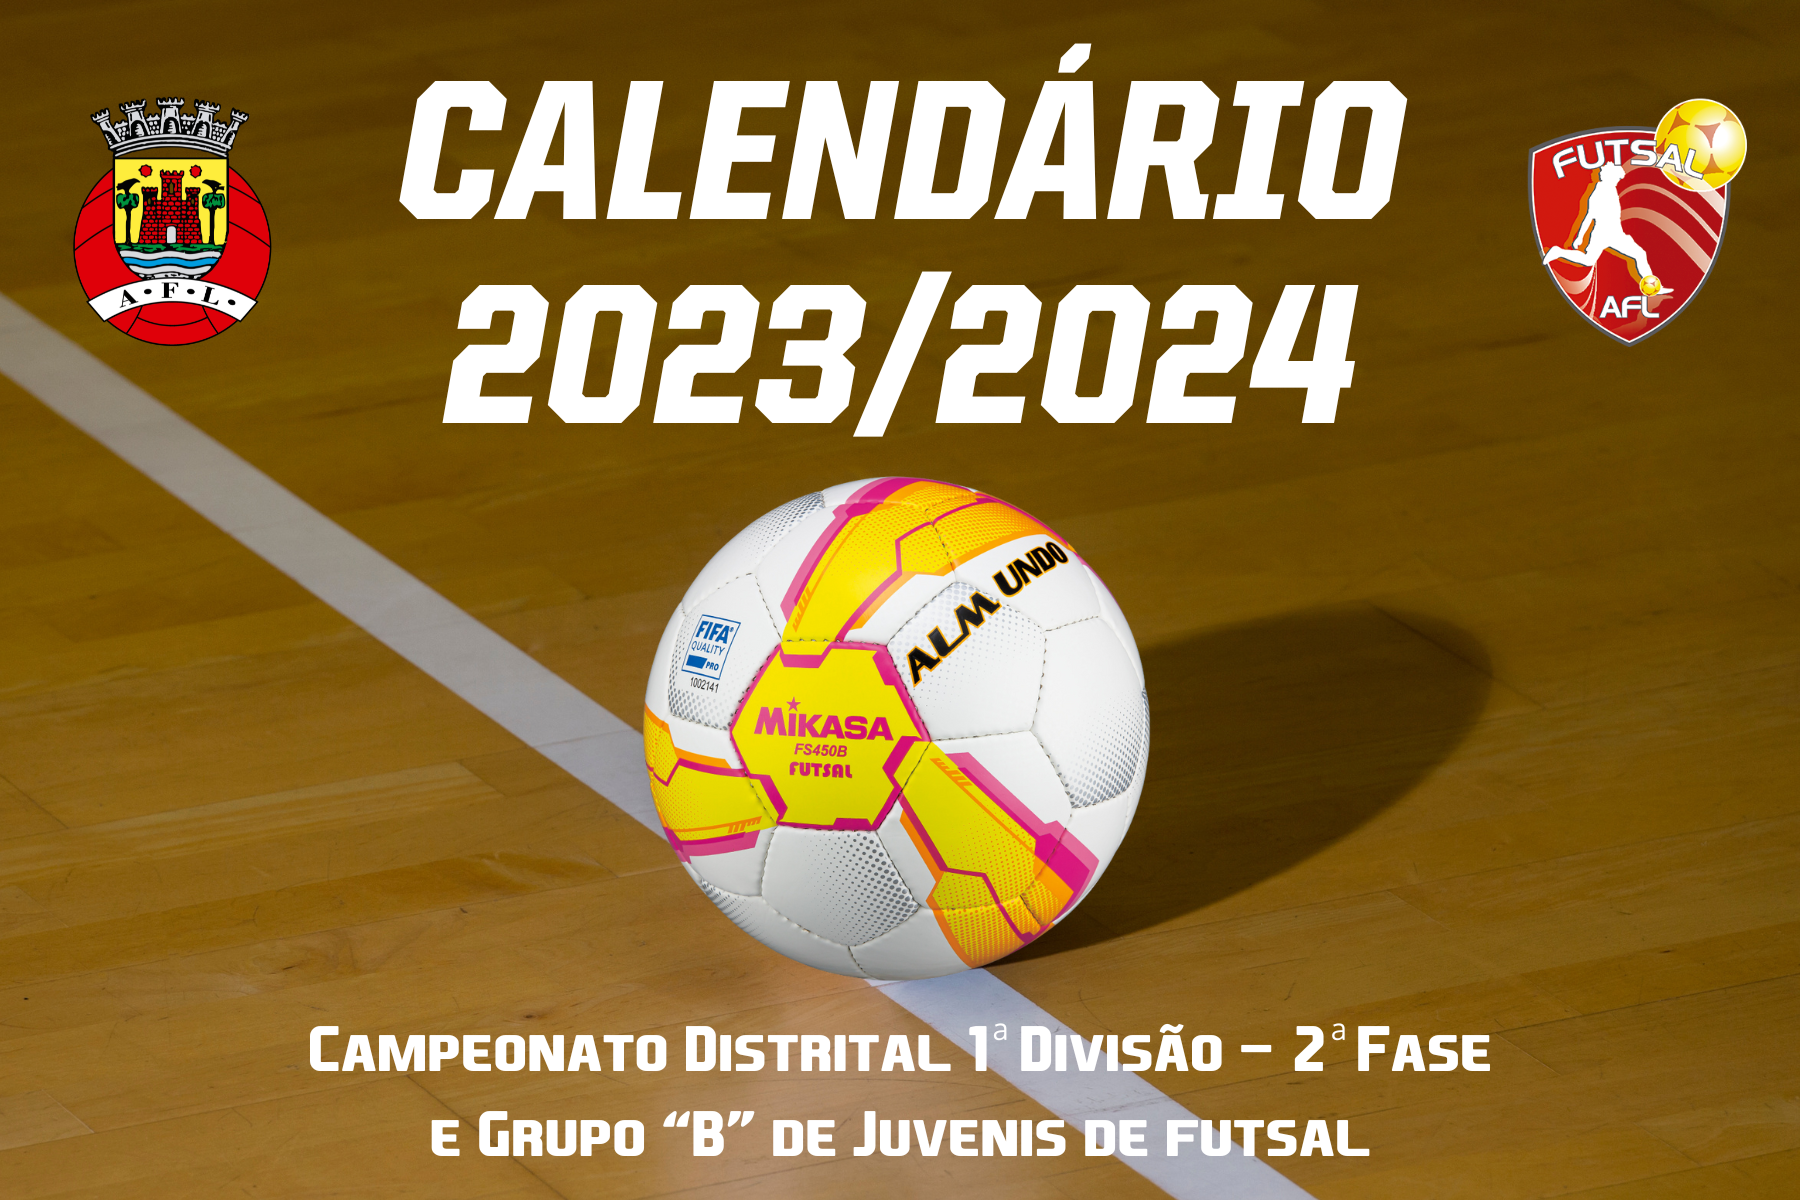 Calendário do Campeonato Distrital 1ª Divisão - 2ª Fase e Grupo B conhecido